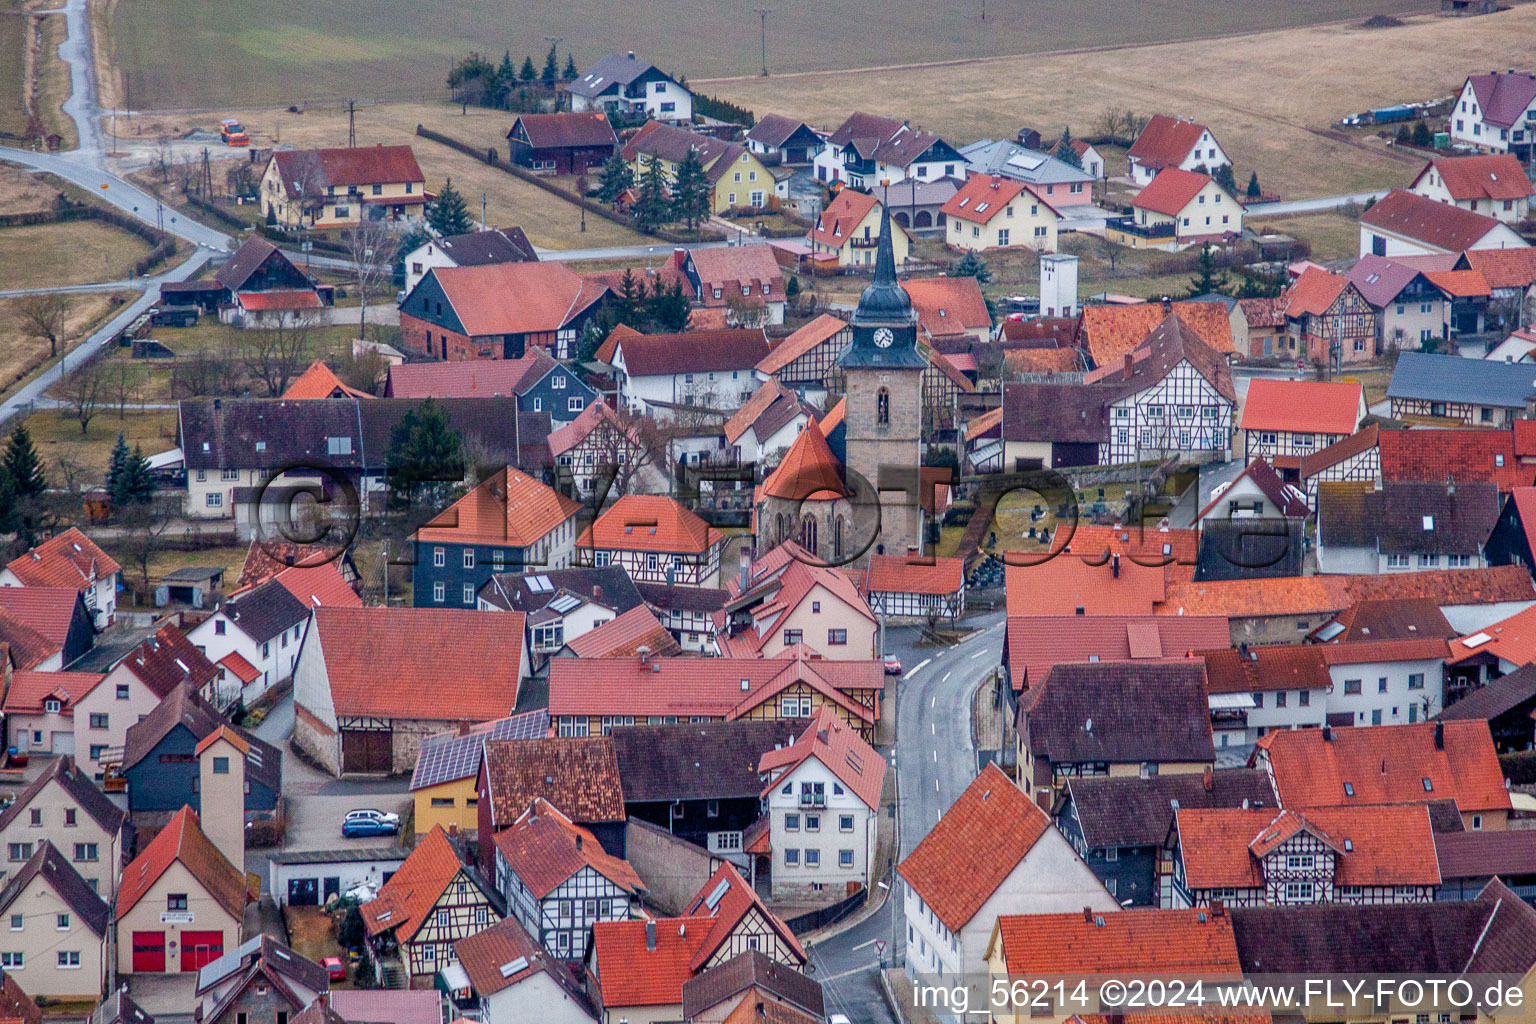 Vue aérienne de Bâtiment d'église au centre du village à Westhausen dans le département Thuringe, Allemagne